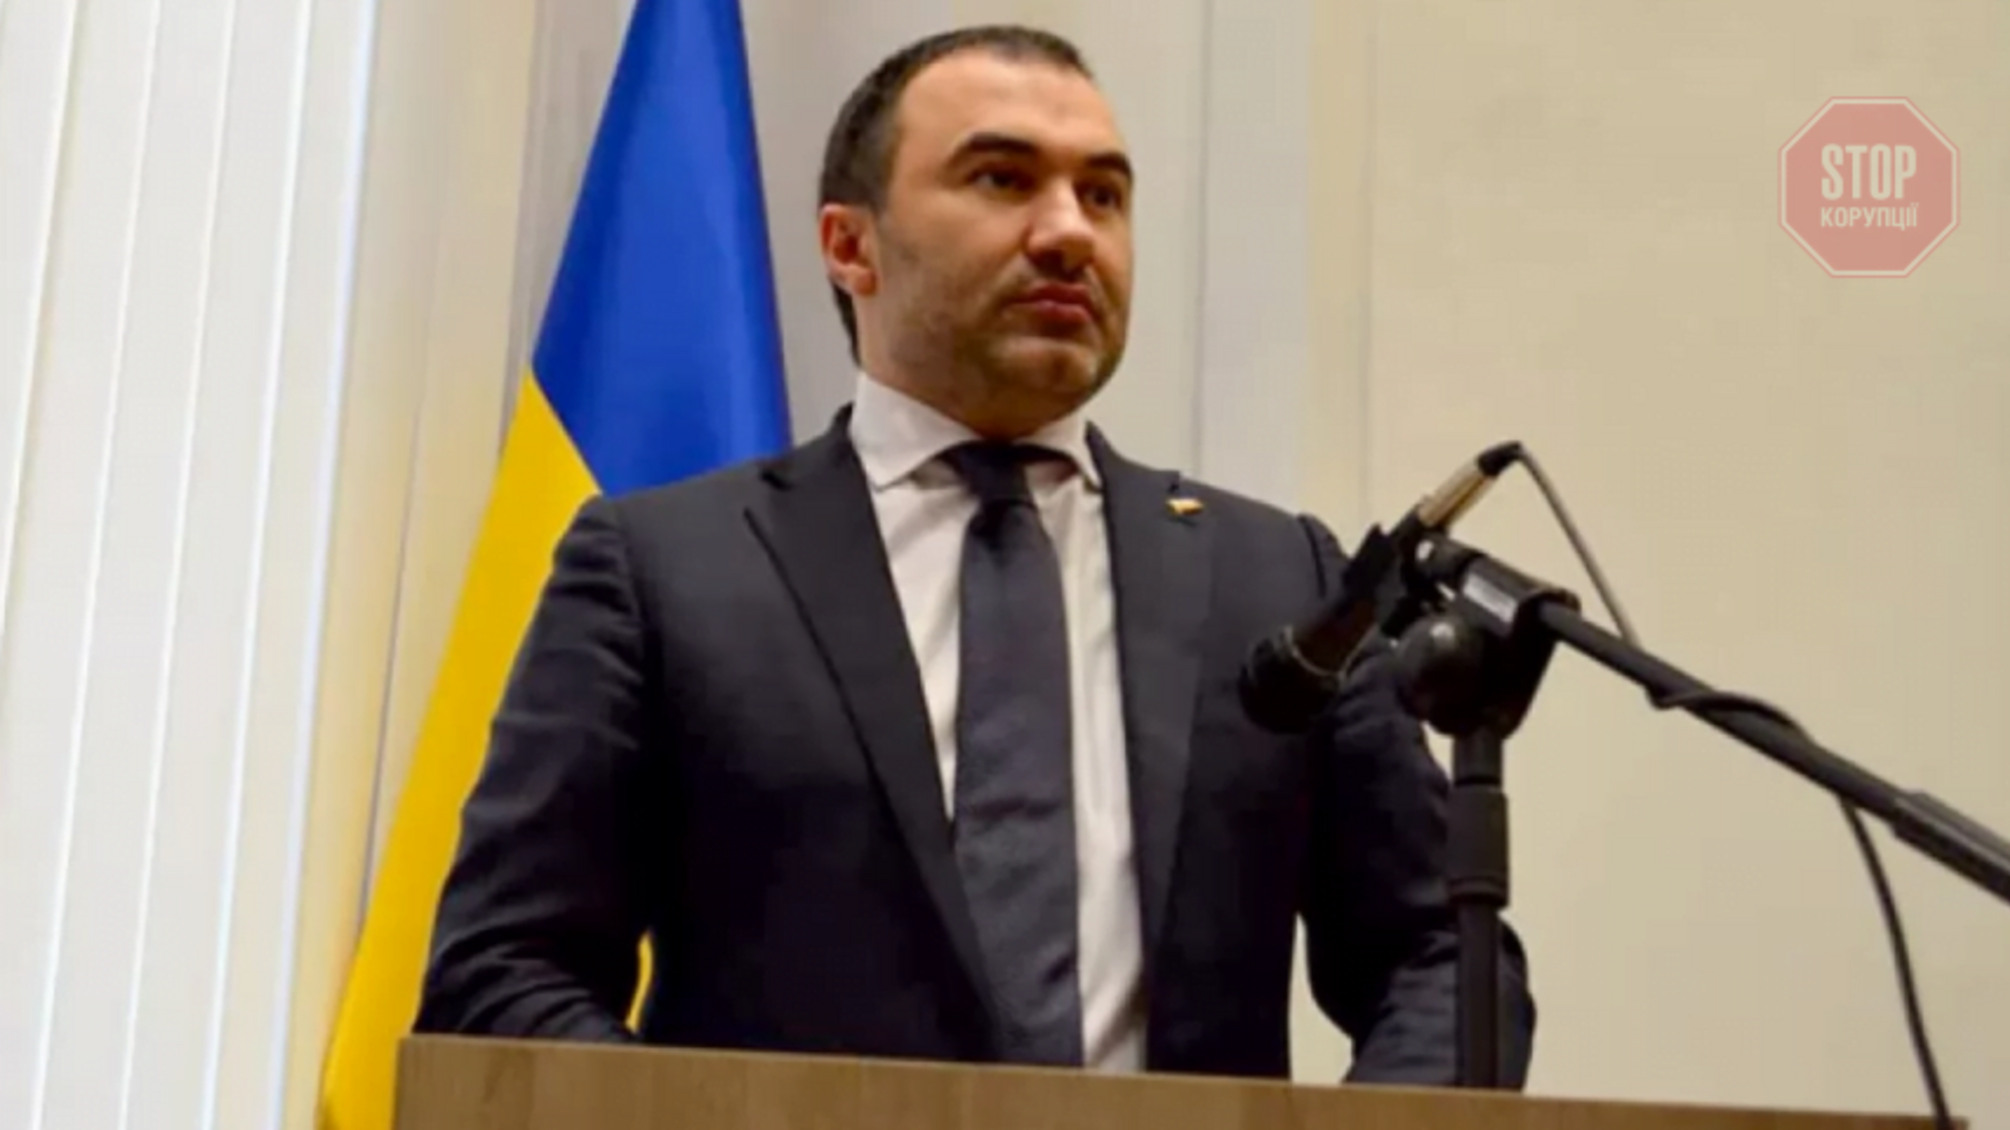 Главу Харьковского областного совета, который попал в коррупционный скандал, уволили